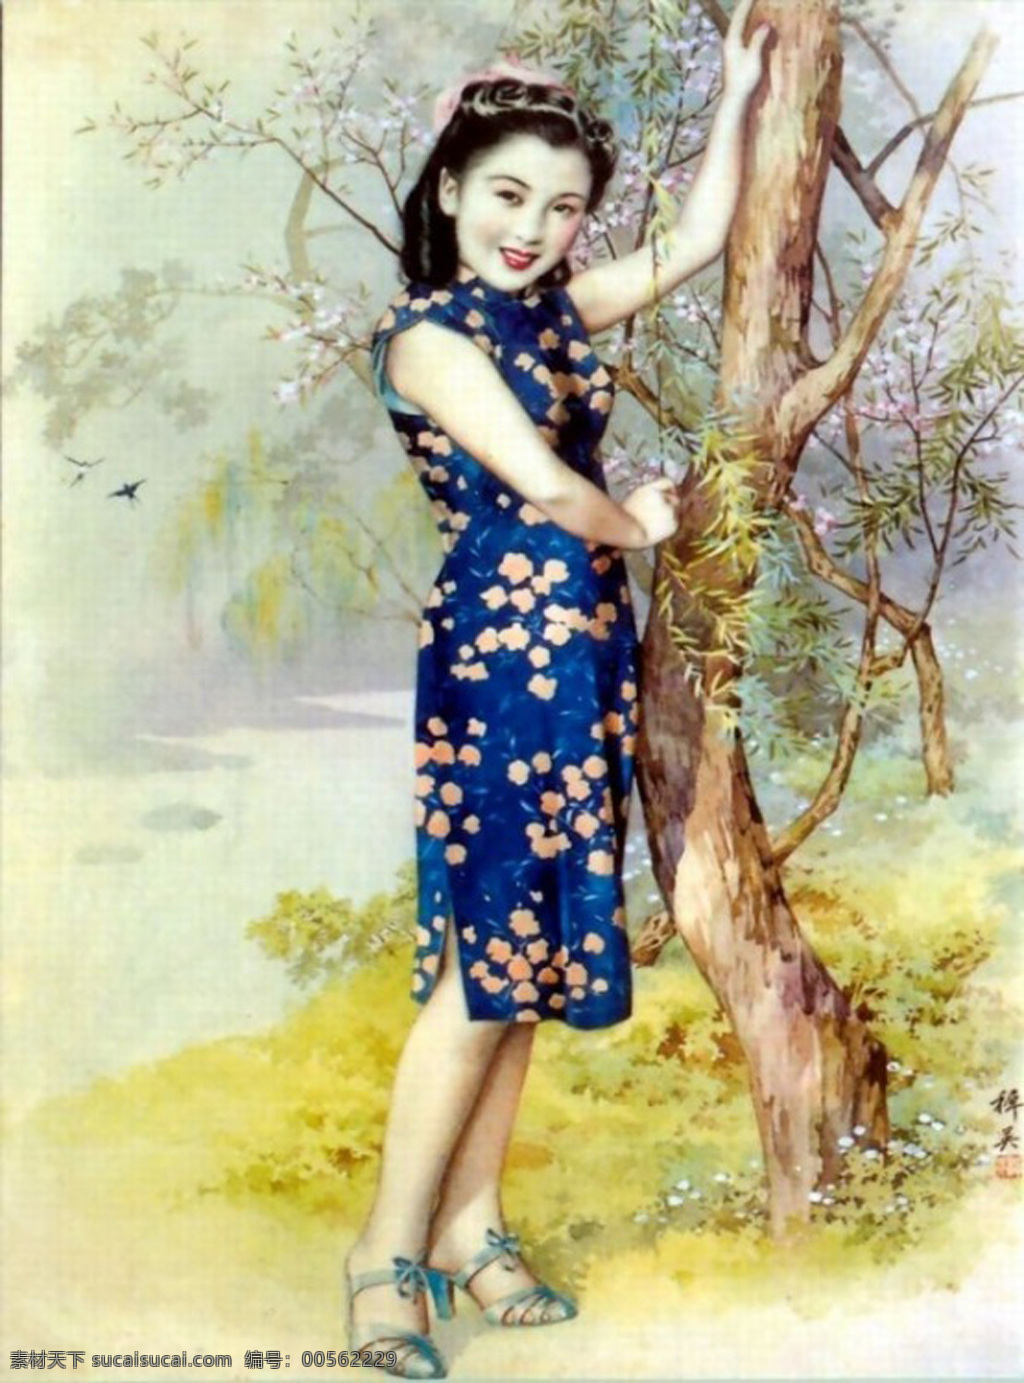 老上海 老上海海报 老上海女人 海报 传统文化 文化艺术